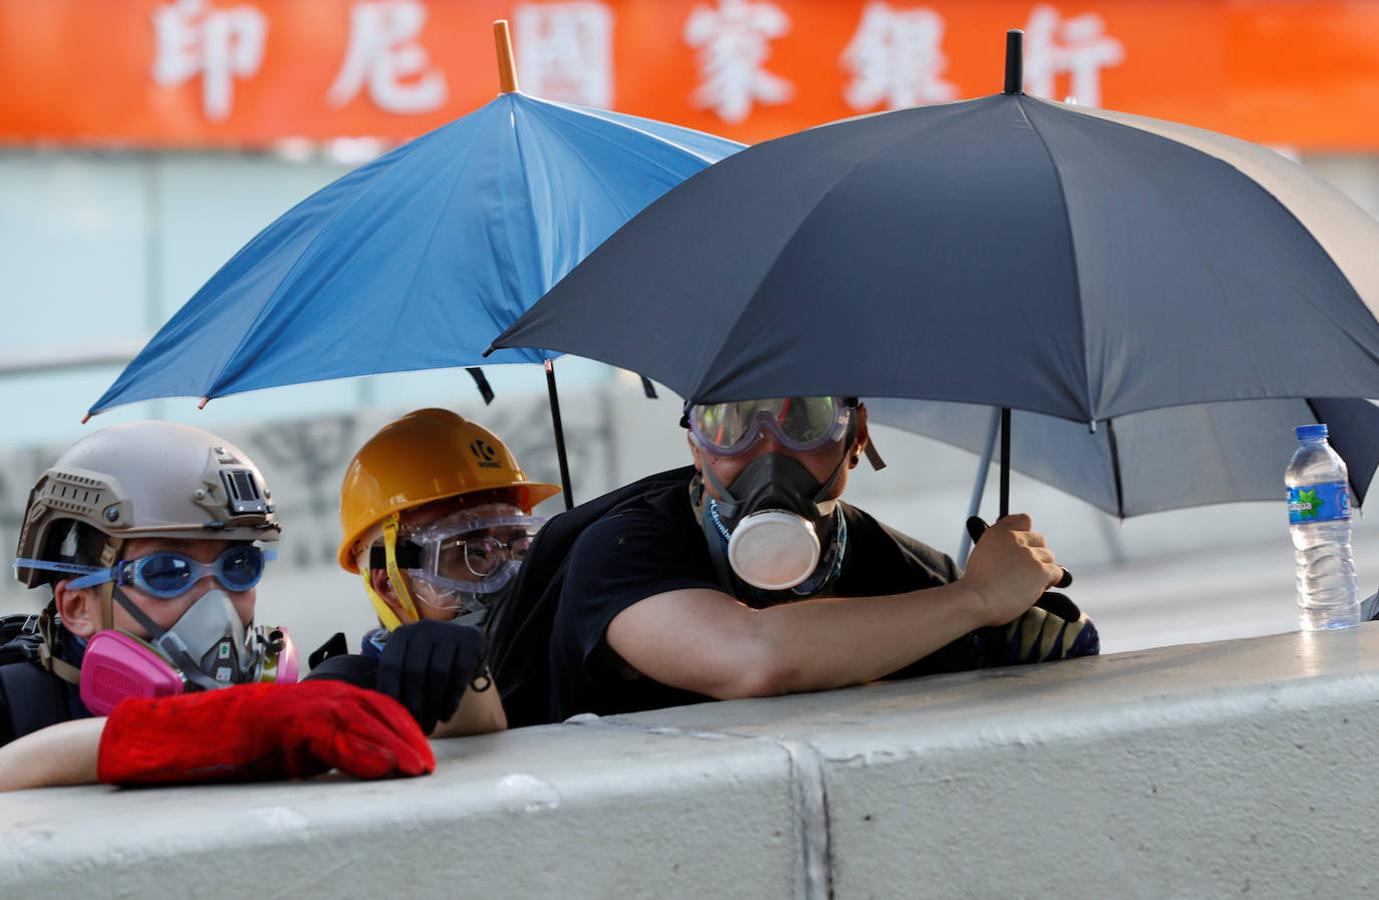 Después de las manifesaciones a las que acudieron más de 100.000 personas el domingo, el movimiento de las 'Tres Huelgas' paralizó Hong Kong este lunes.